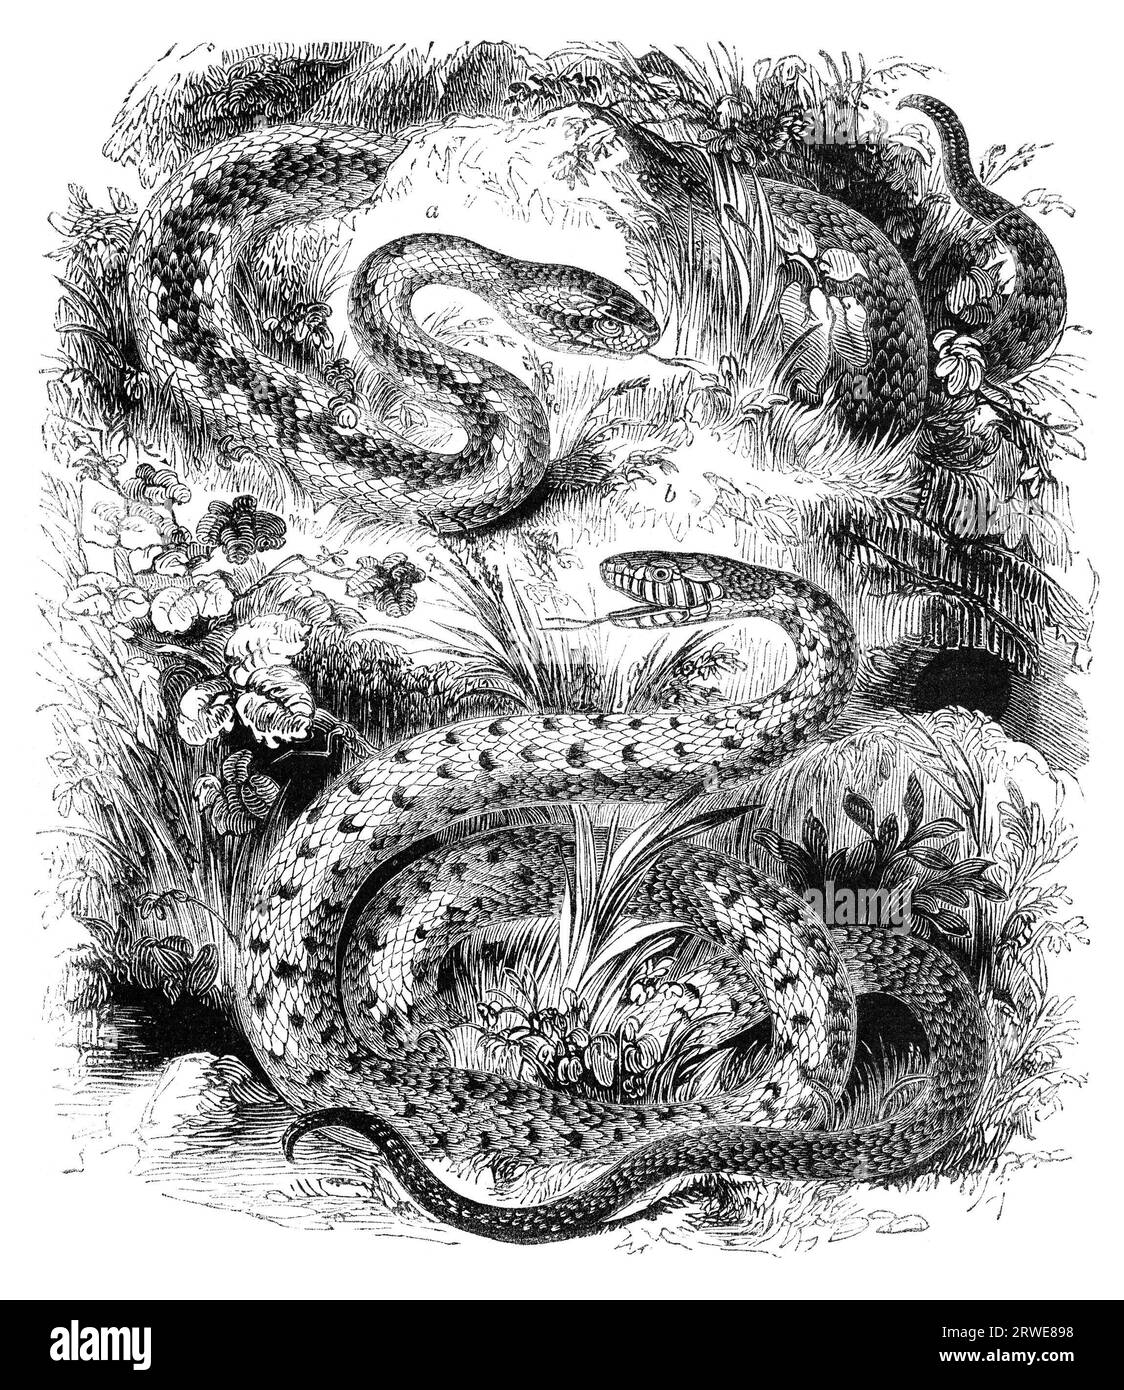 Un'adorazione comune e un serpente con anelli, un serpente d'erba. Illustrazione da The Penny Magazine, agosto 1843 Foto Stock